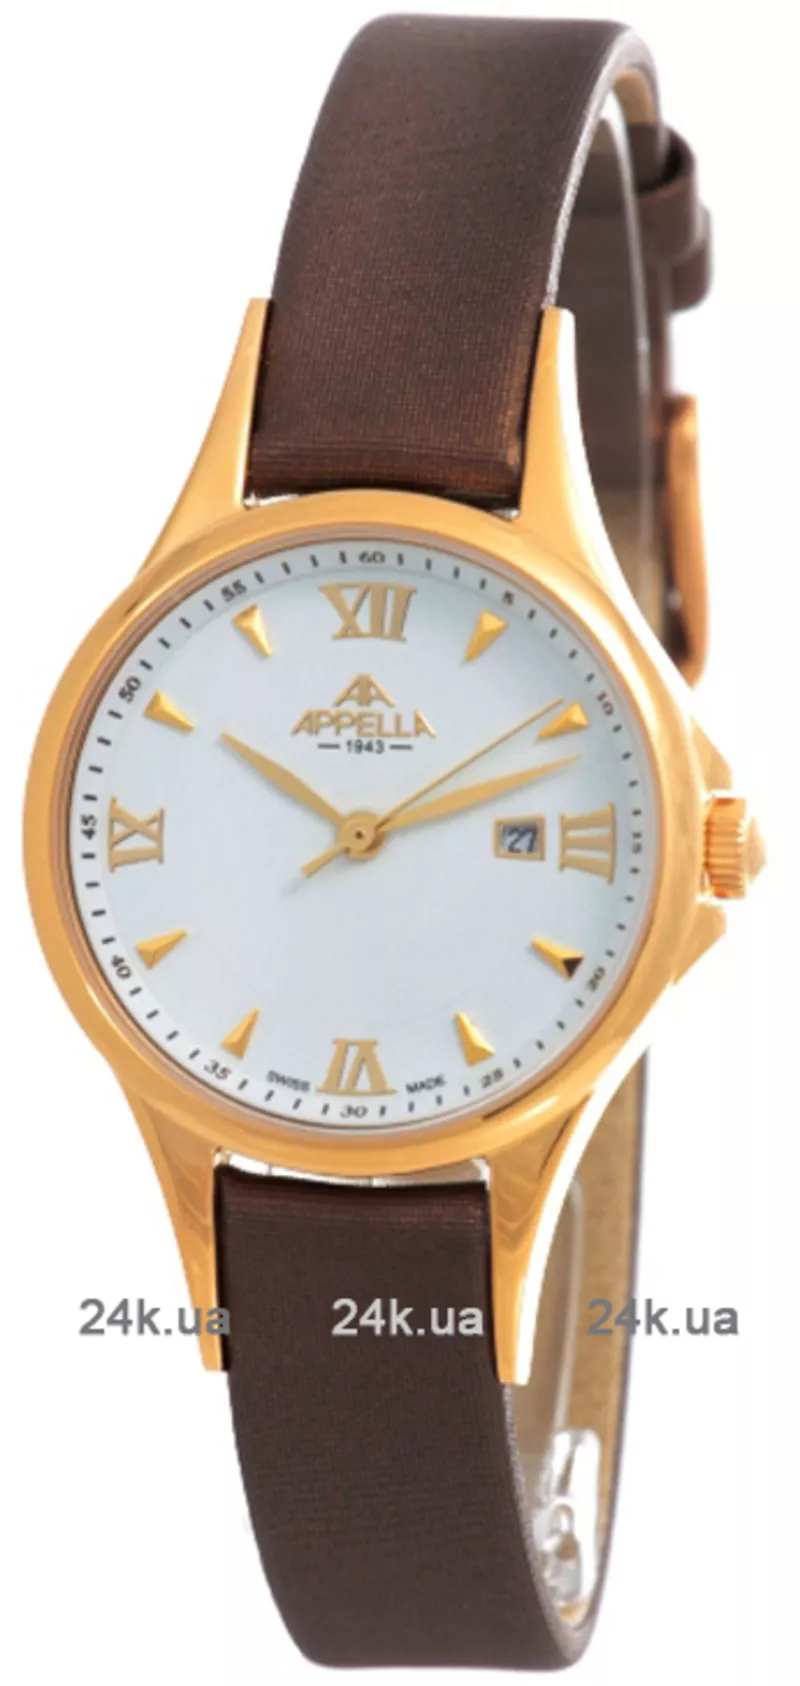 Часы Appella 4344-1011